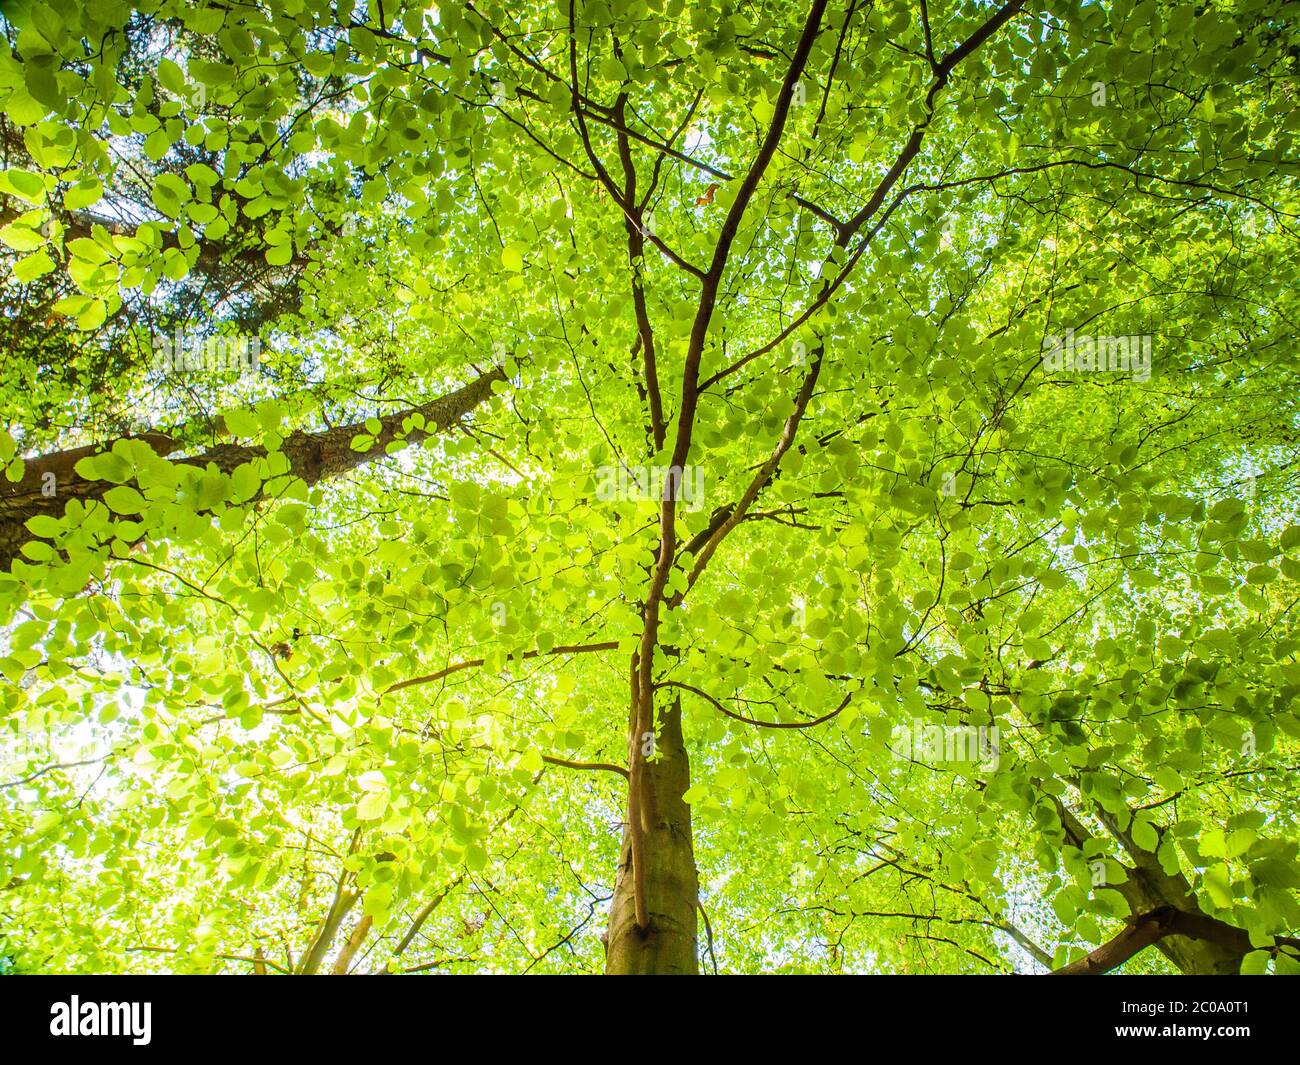 Frühling im Wald. Baum mit grünen Blättern, die von der Sonne beleuchtet sind. Natürliche Hintergrundbilder. Stockfoto